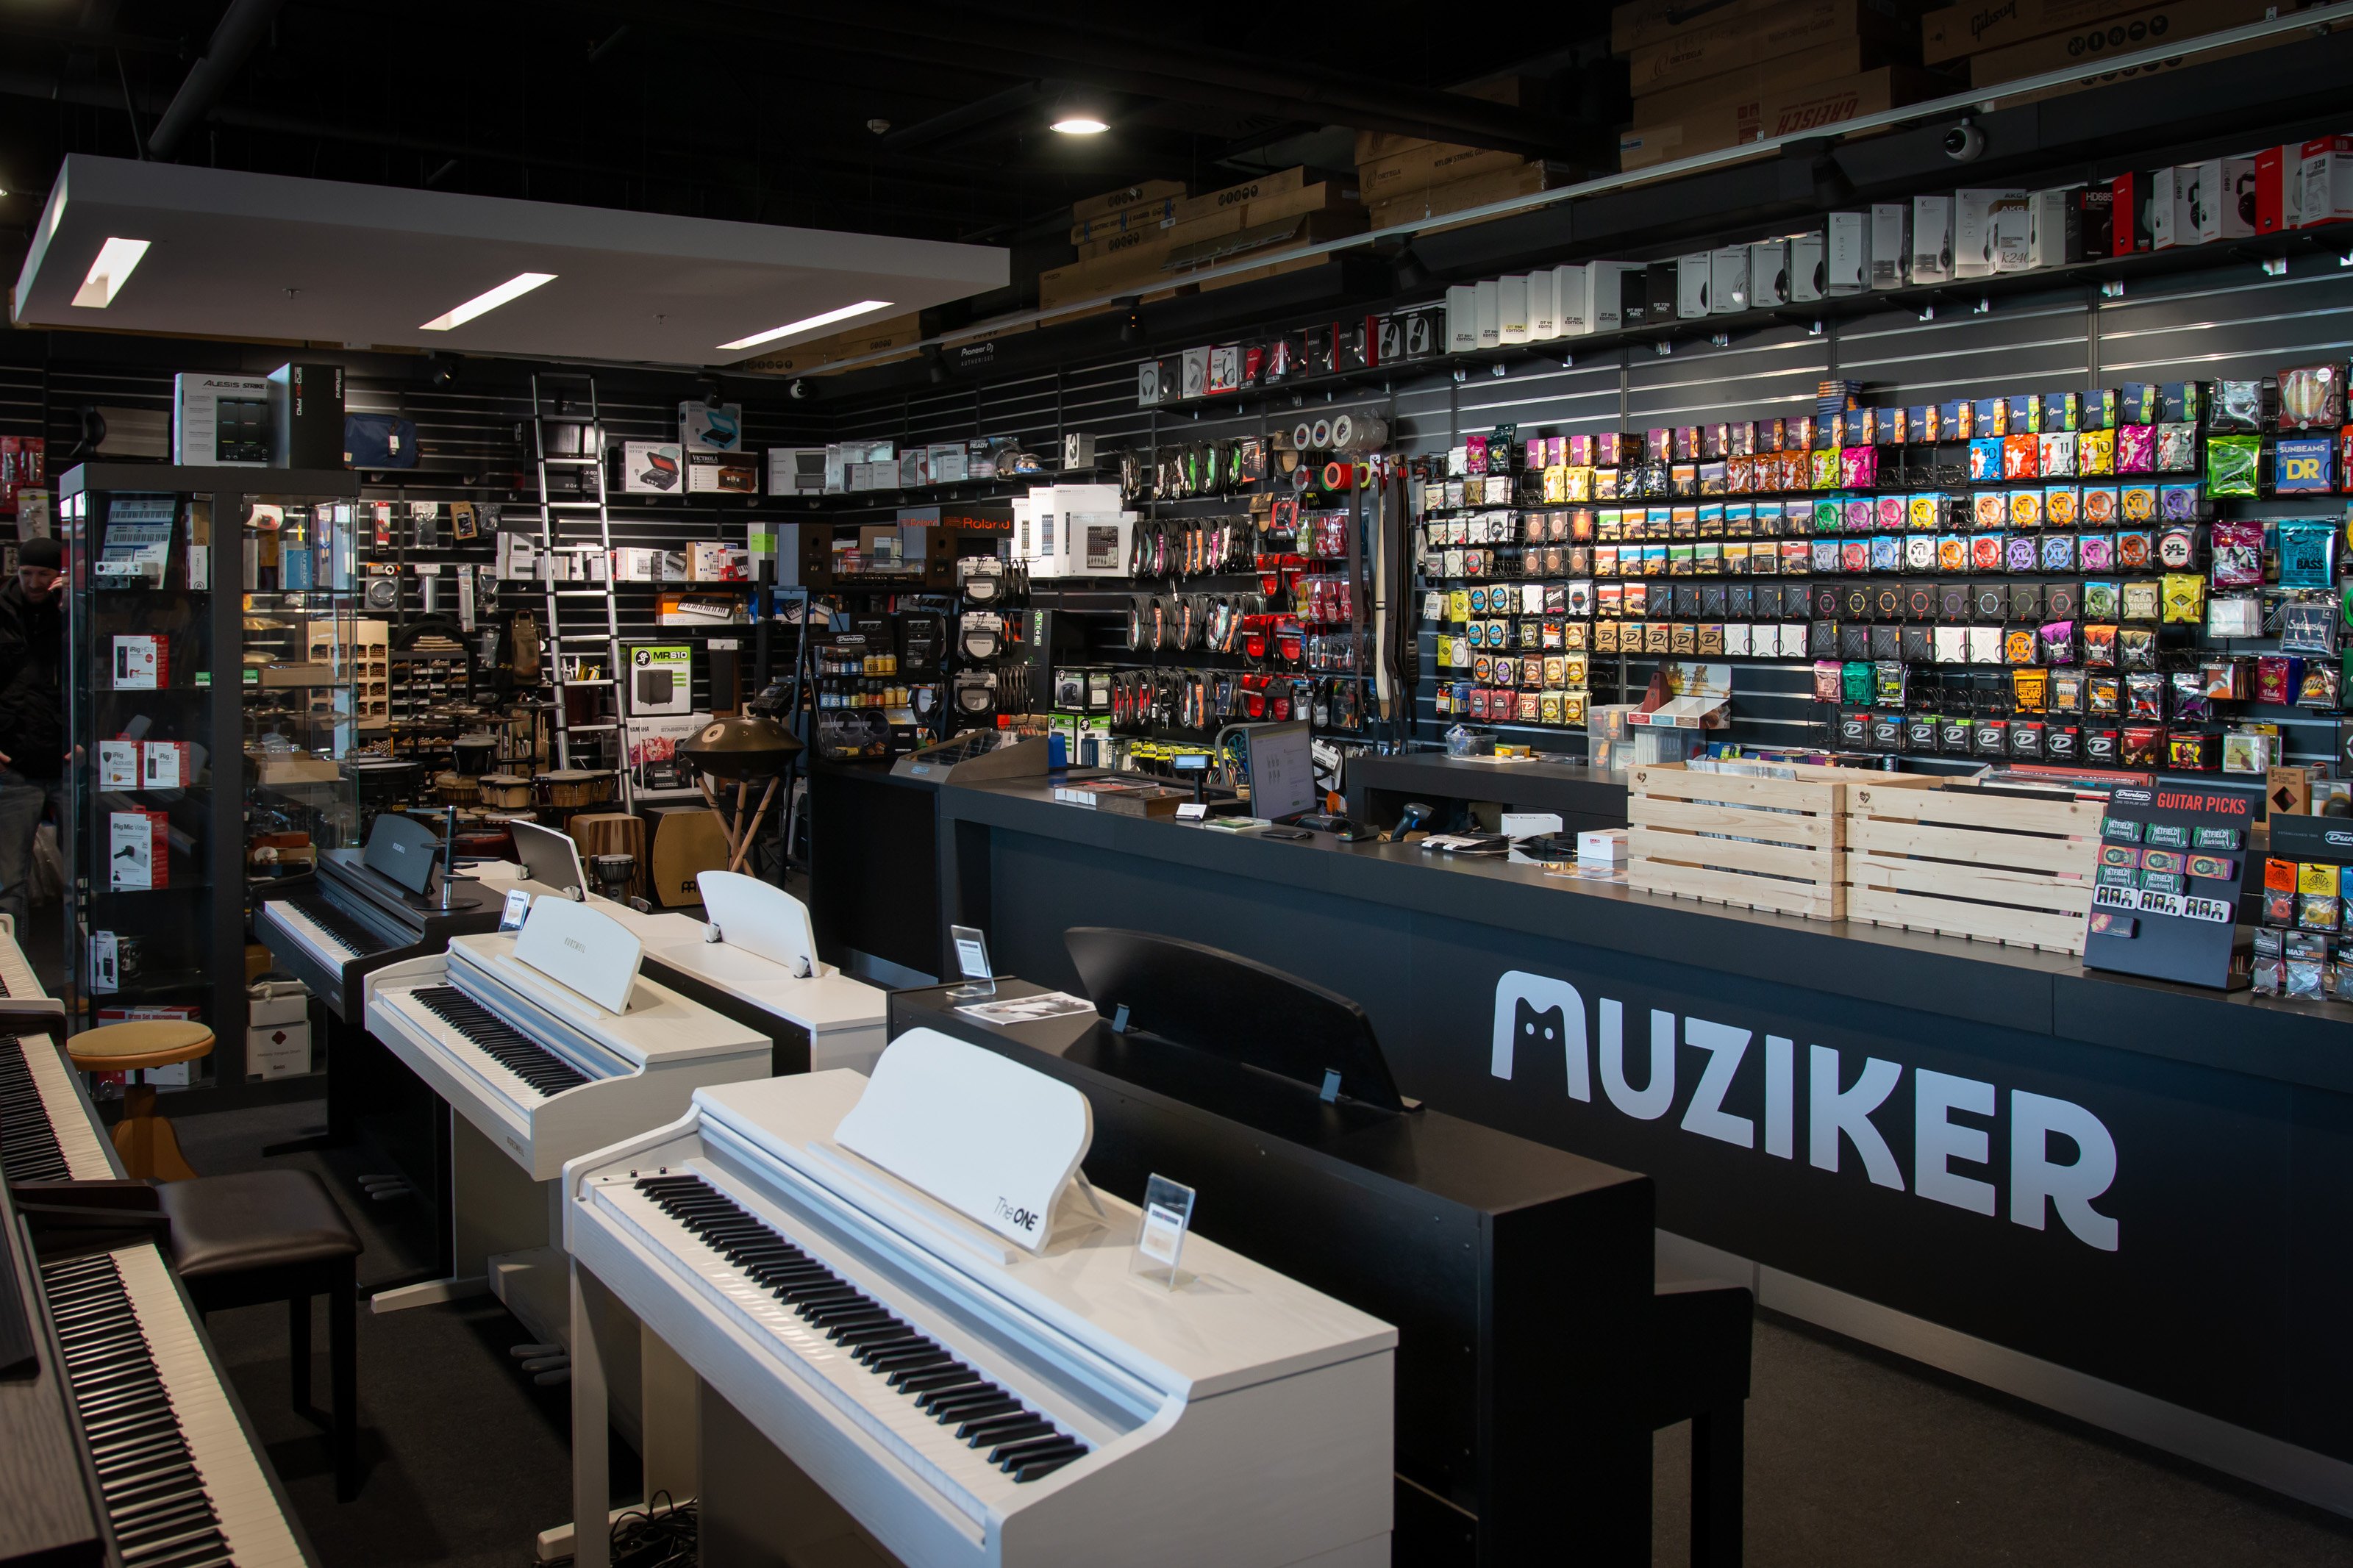 Instrumenty muzyczne w sklepie muzycznym Muziker Bratislava - Digital Park.